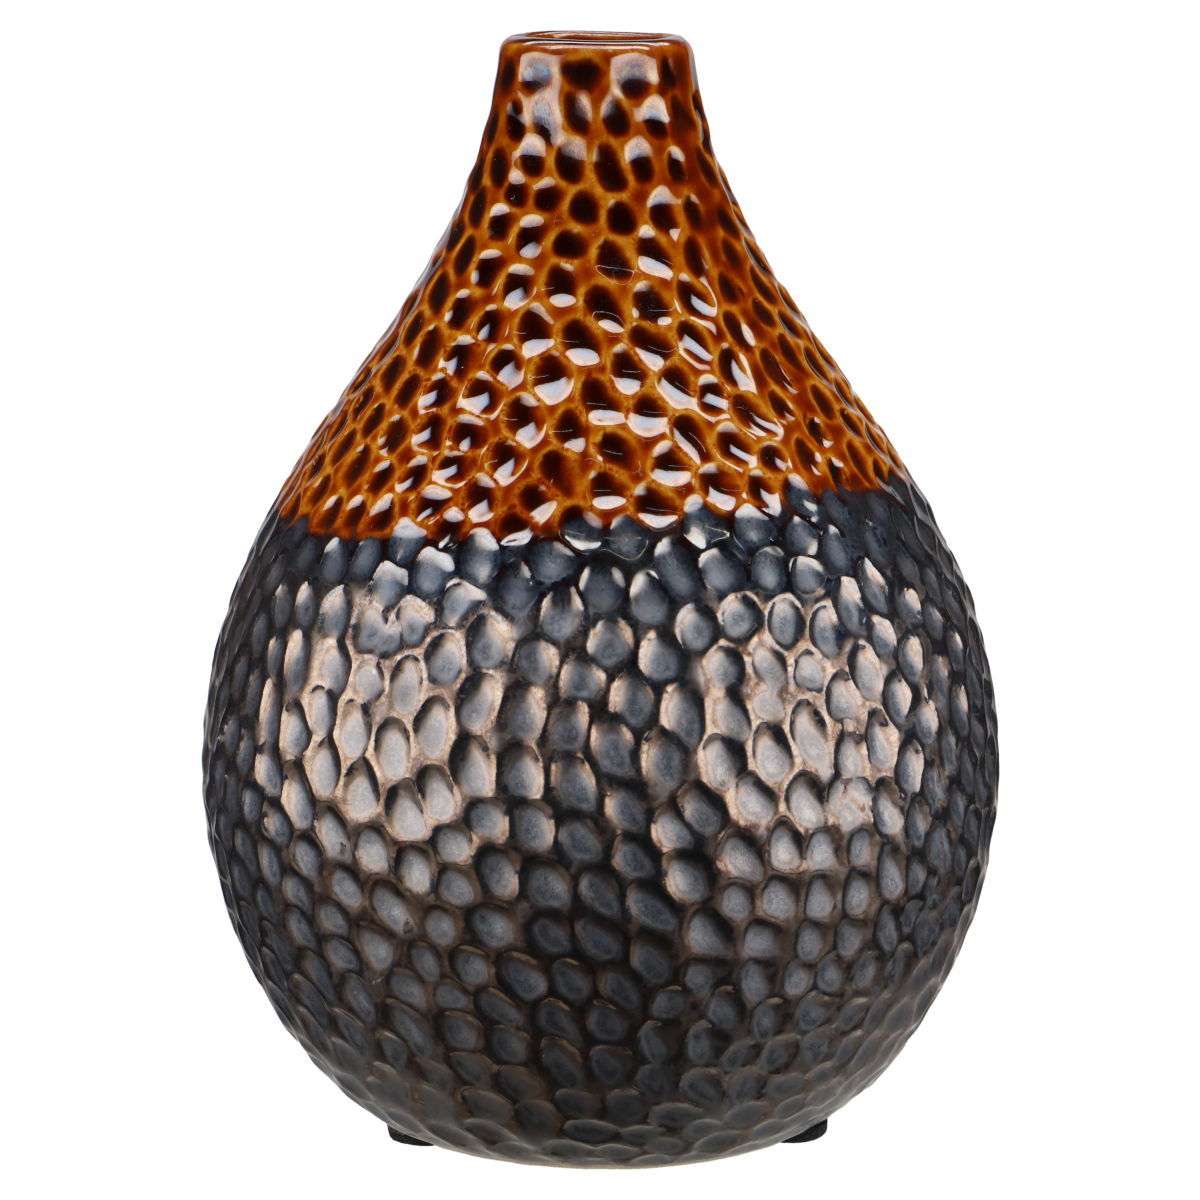 Vase bauchig Sambia mittelgroß braun glänzend